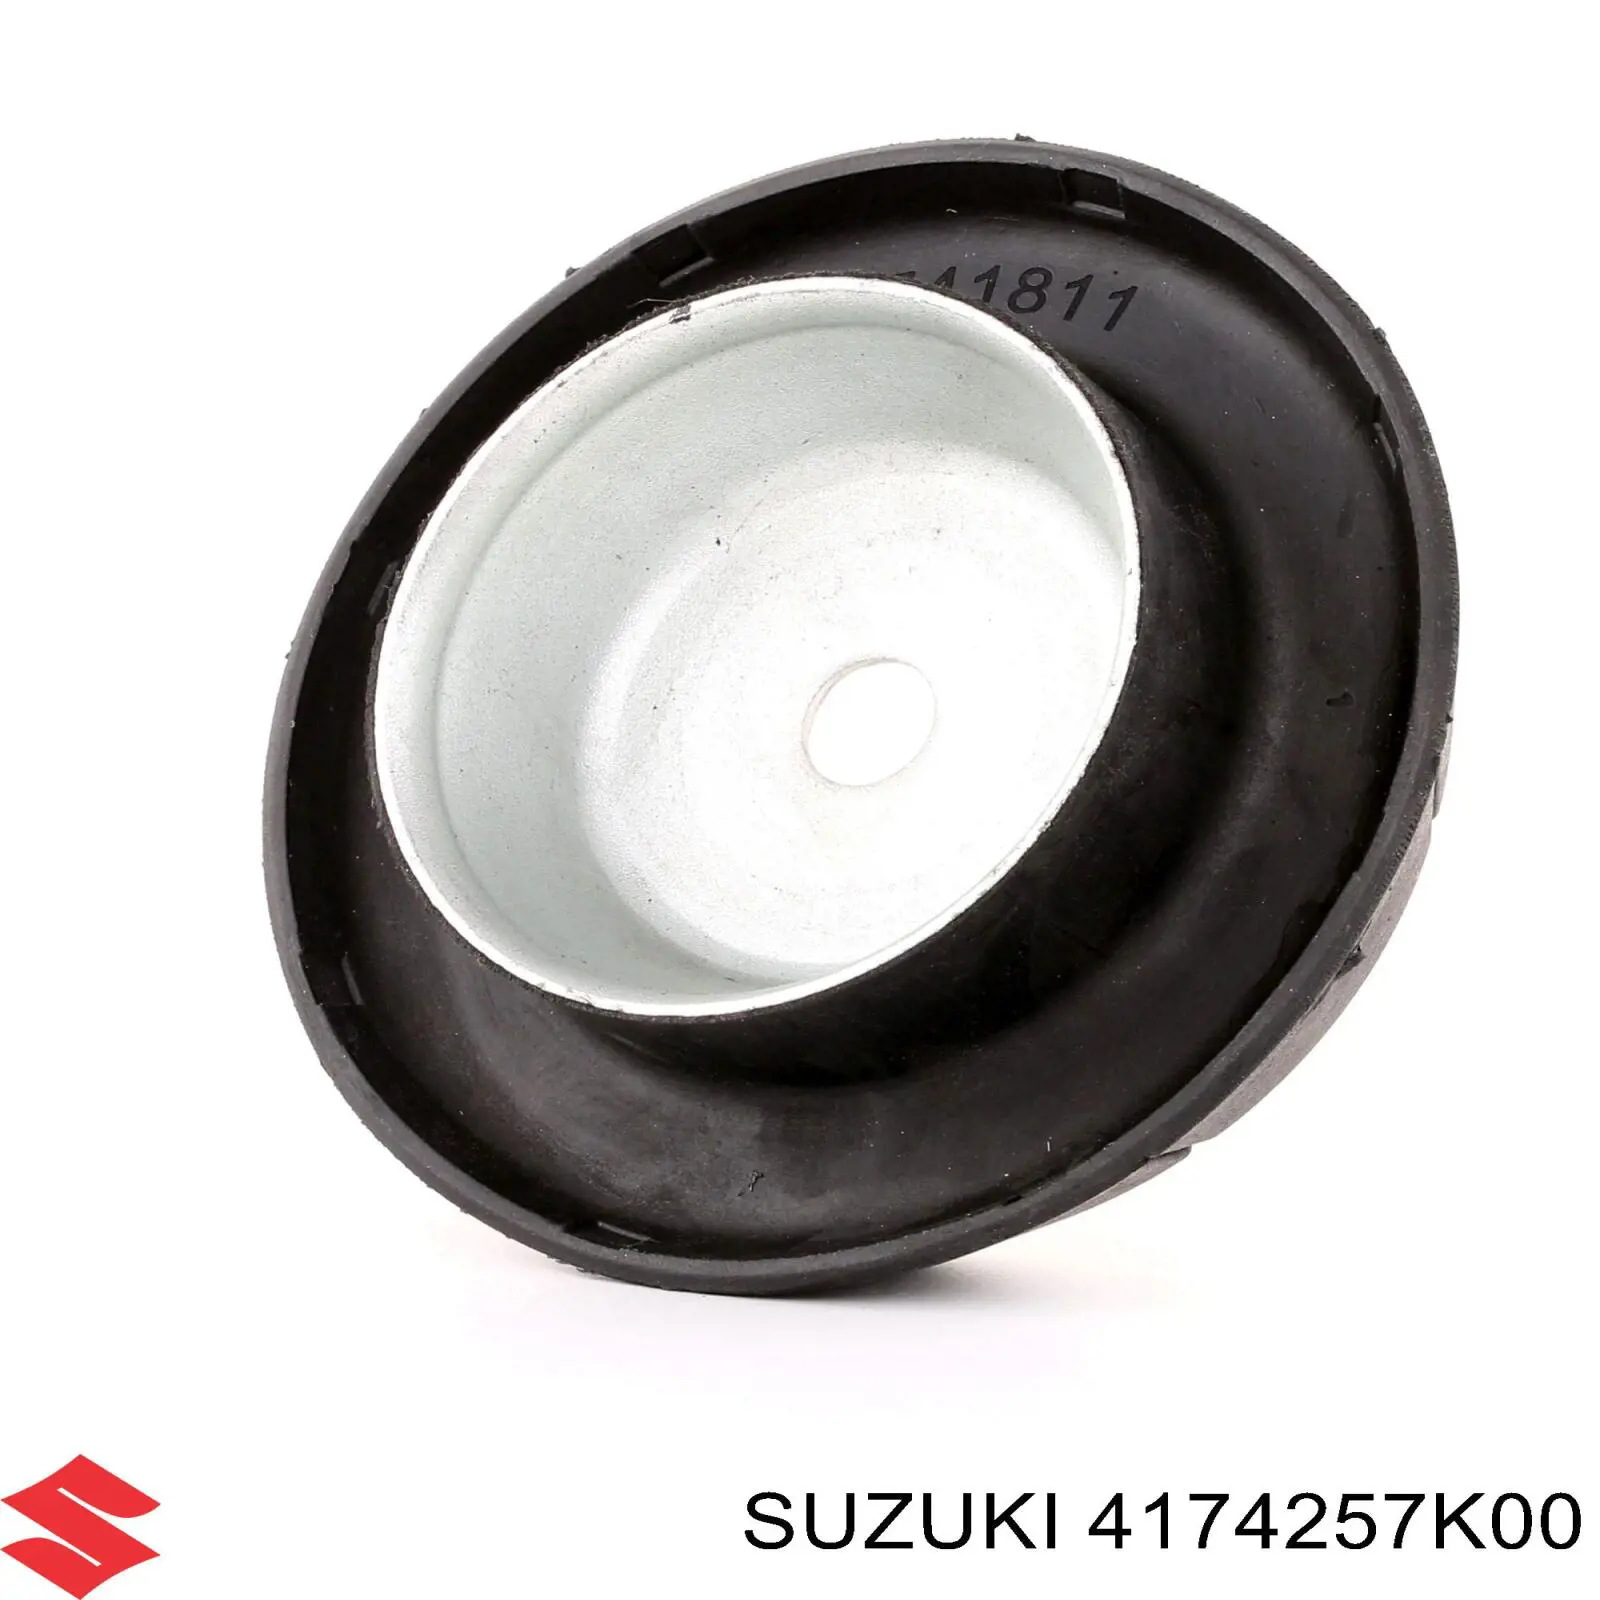 4174257K00 Suzuki rolamento de suporte do amortecedor dianteiro